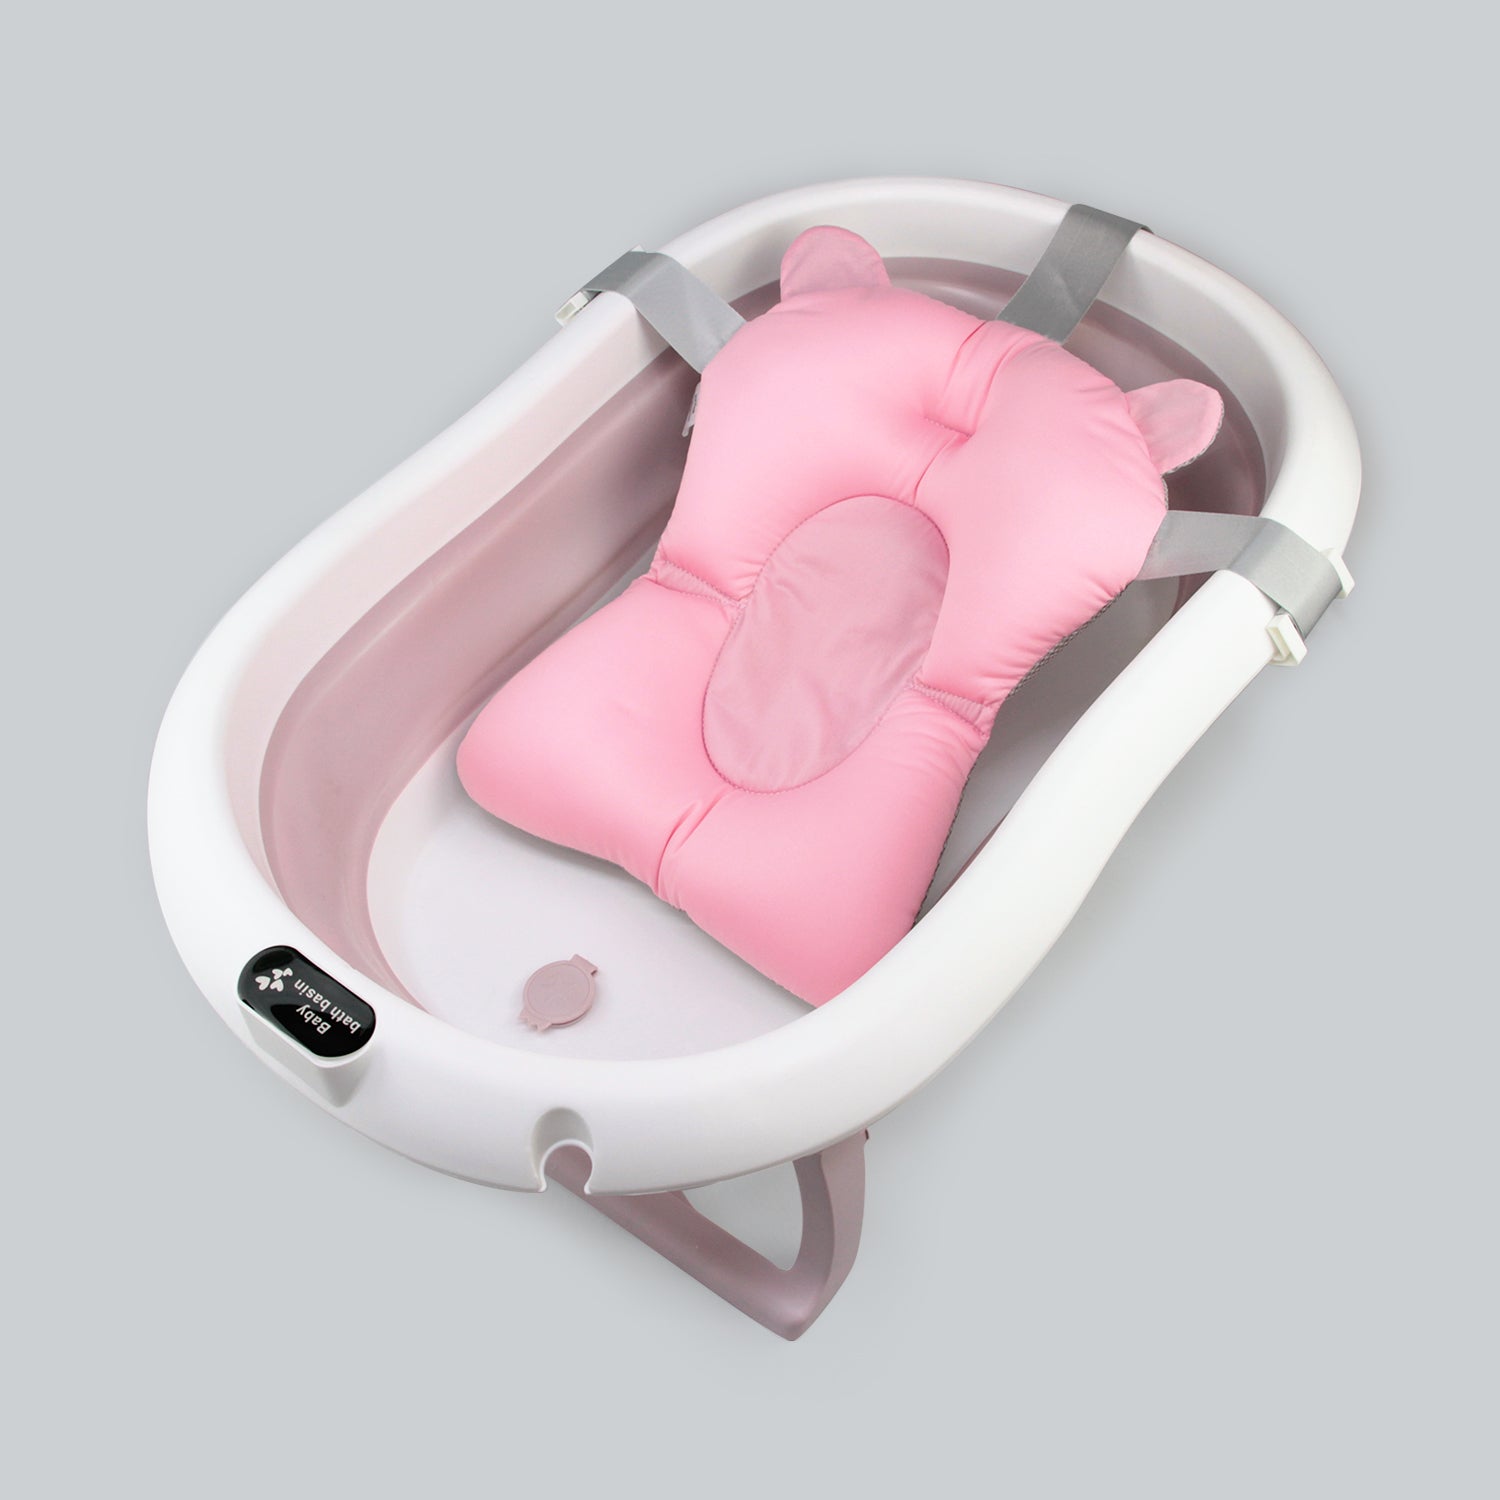  Bañera plegable para adultos, bañera portátil de plástico con  una cubierta para sentarse en casa, bañera para adultos y niños, bañera  grande de 2 colores (color rosado) : Bebés